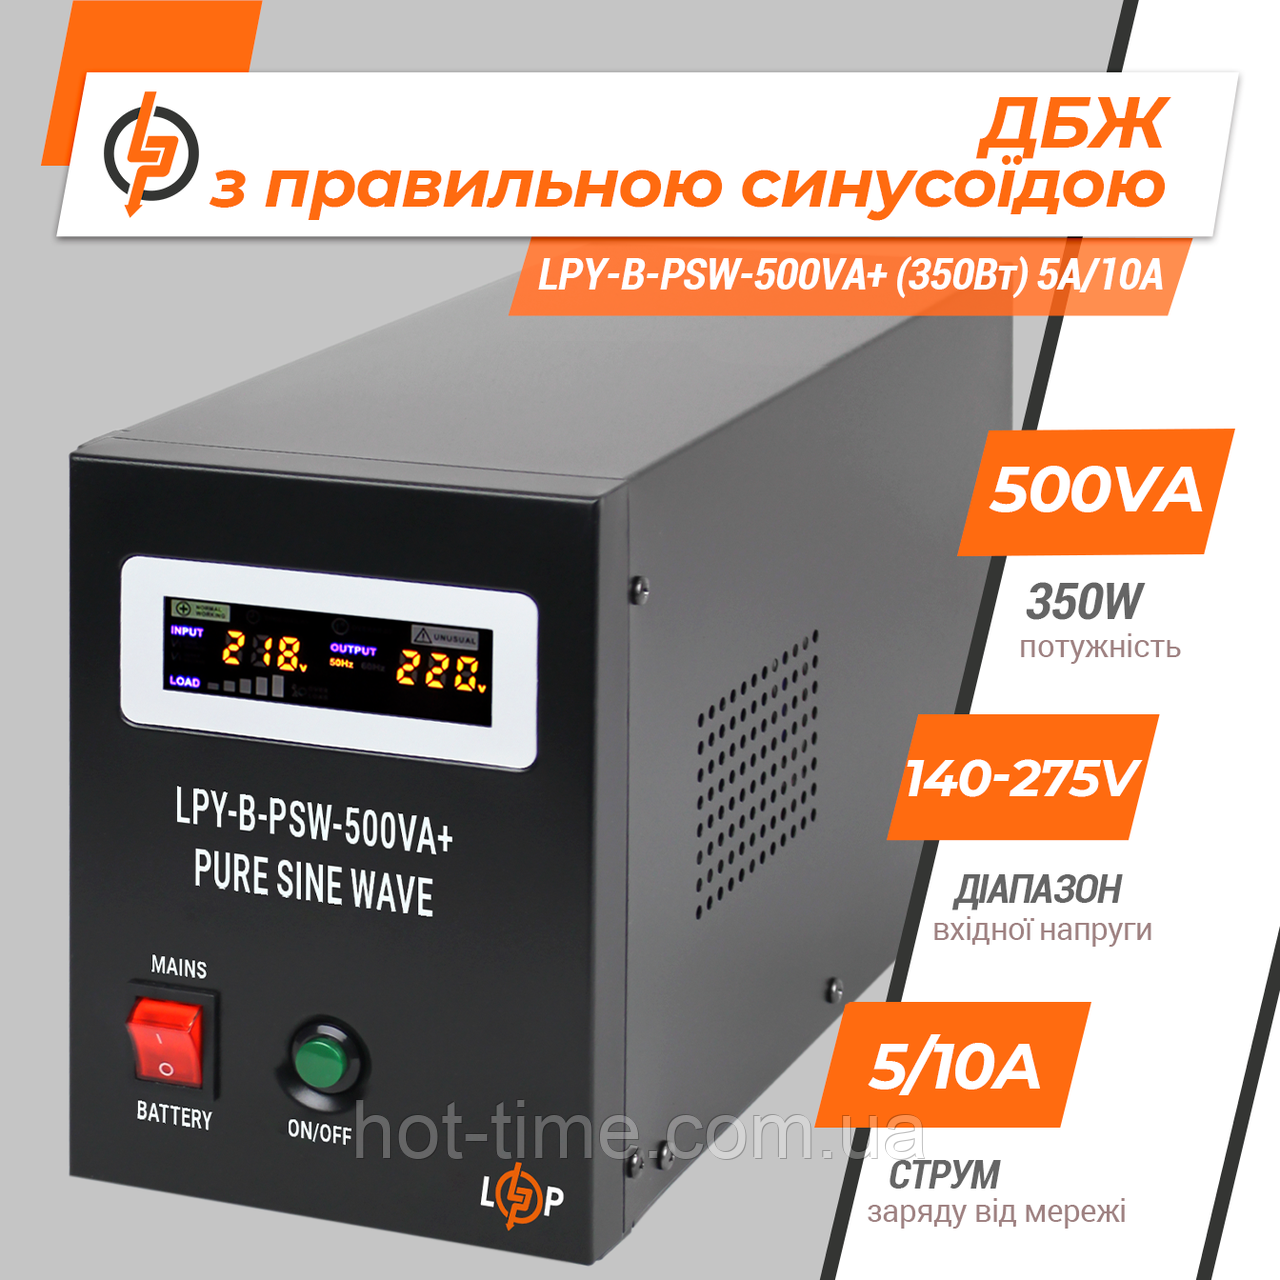 ДБЖ LogicPower LPY-B-PSW-500VA+ (350Вт) 5A/10A з правильною синусоїдою